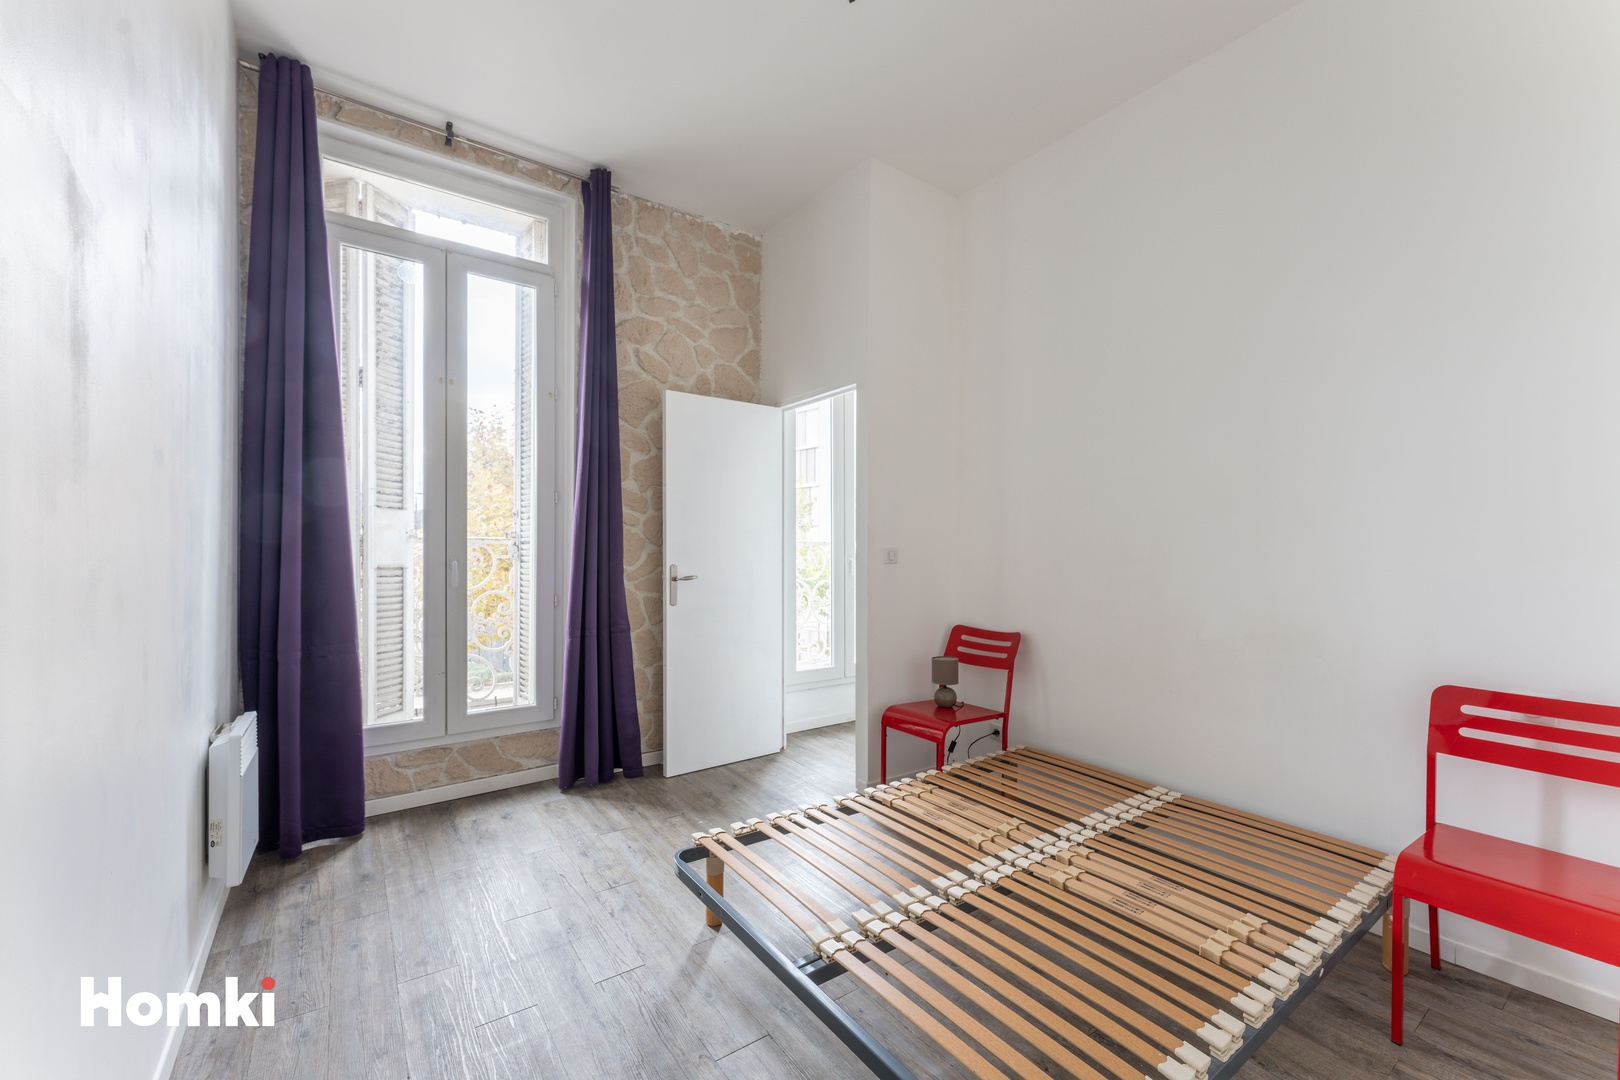 Homki - Vente Appartement  de 60.0 m² à Marseille 13002